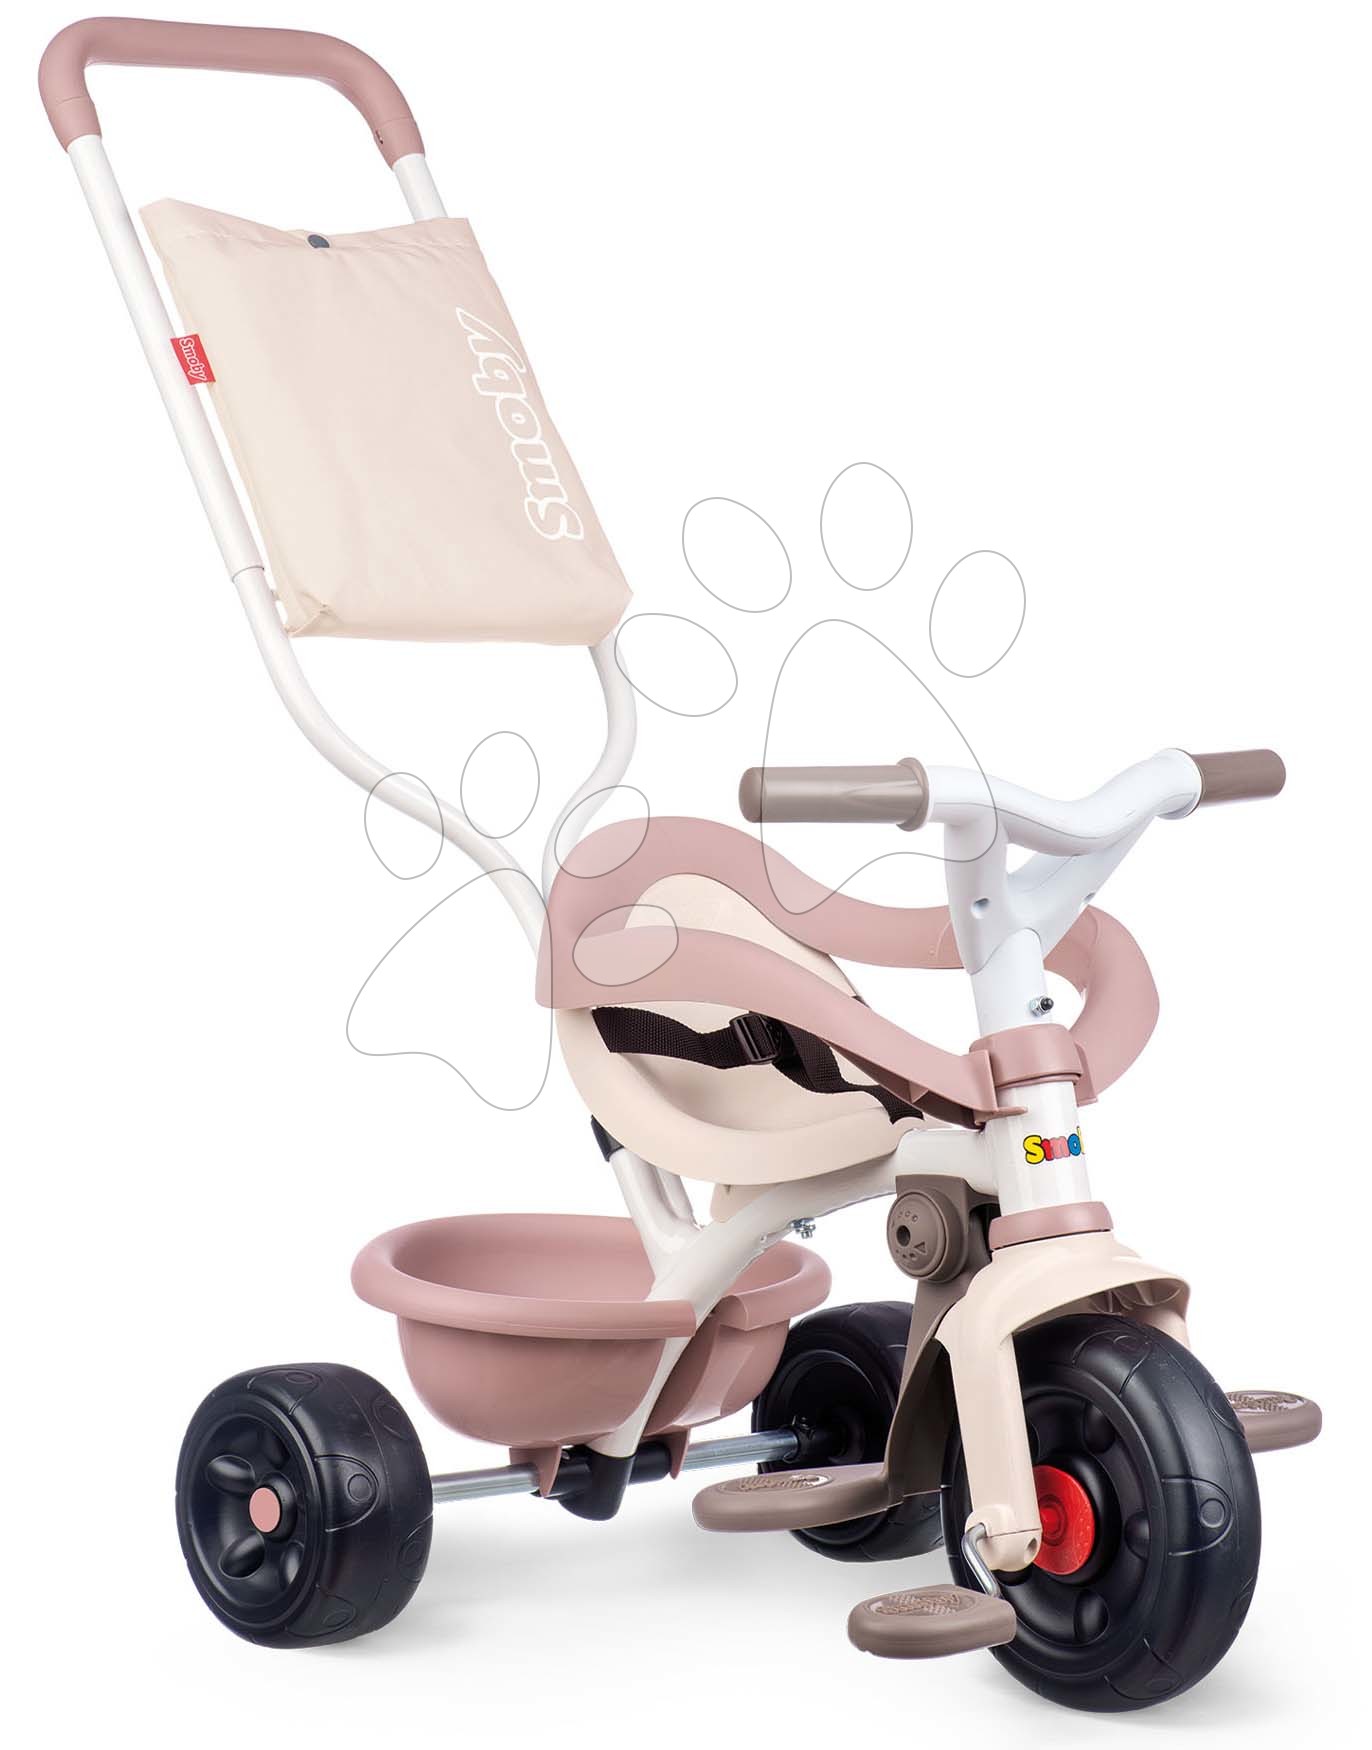 Tricikli za djecu od 10 mjeseci - Tricikl Be Fun Comfort Tricycle Pink Smoby s dvostrukom upravljačkom drškom i torbom od 10 mjes